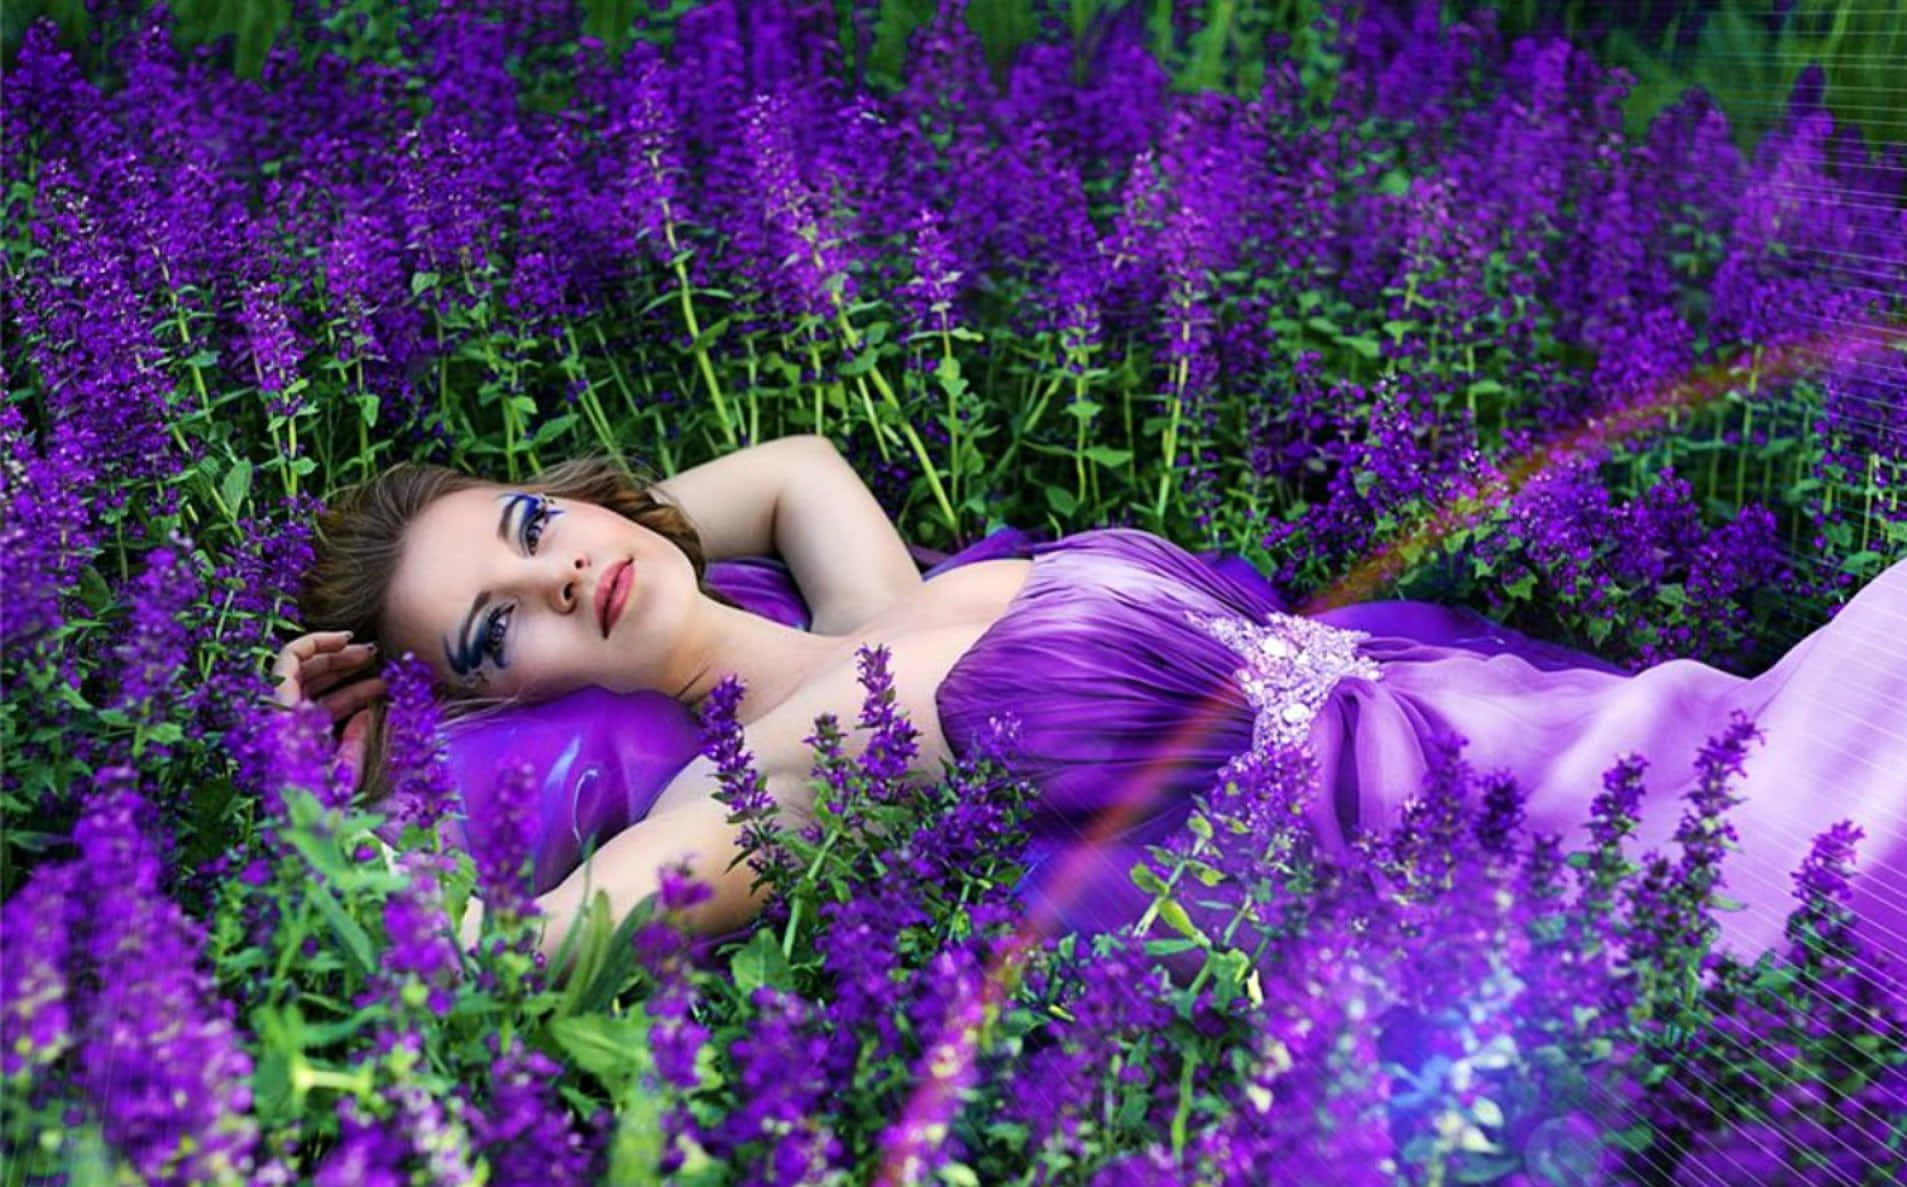 Amateur Model In Lavender Field Wallpaper